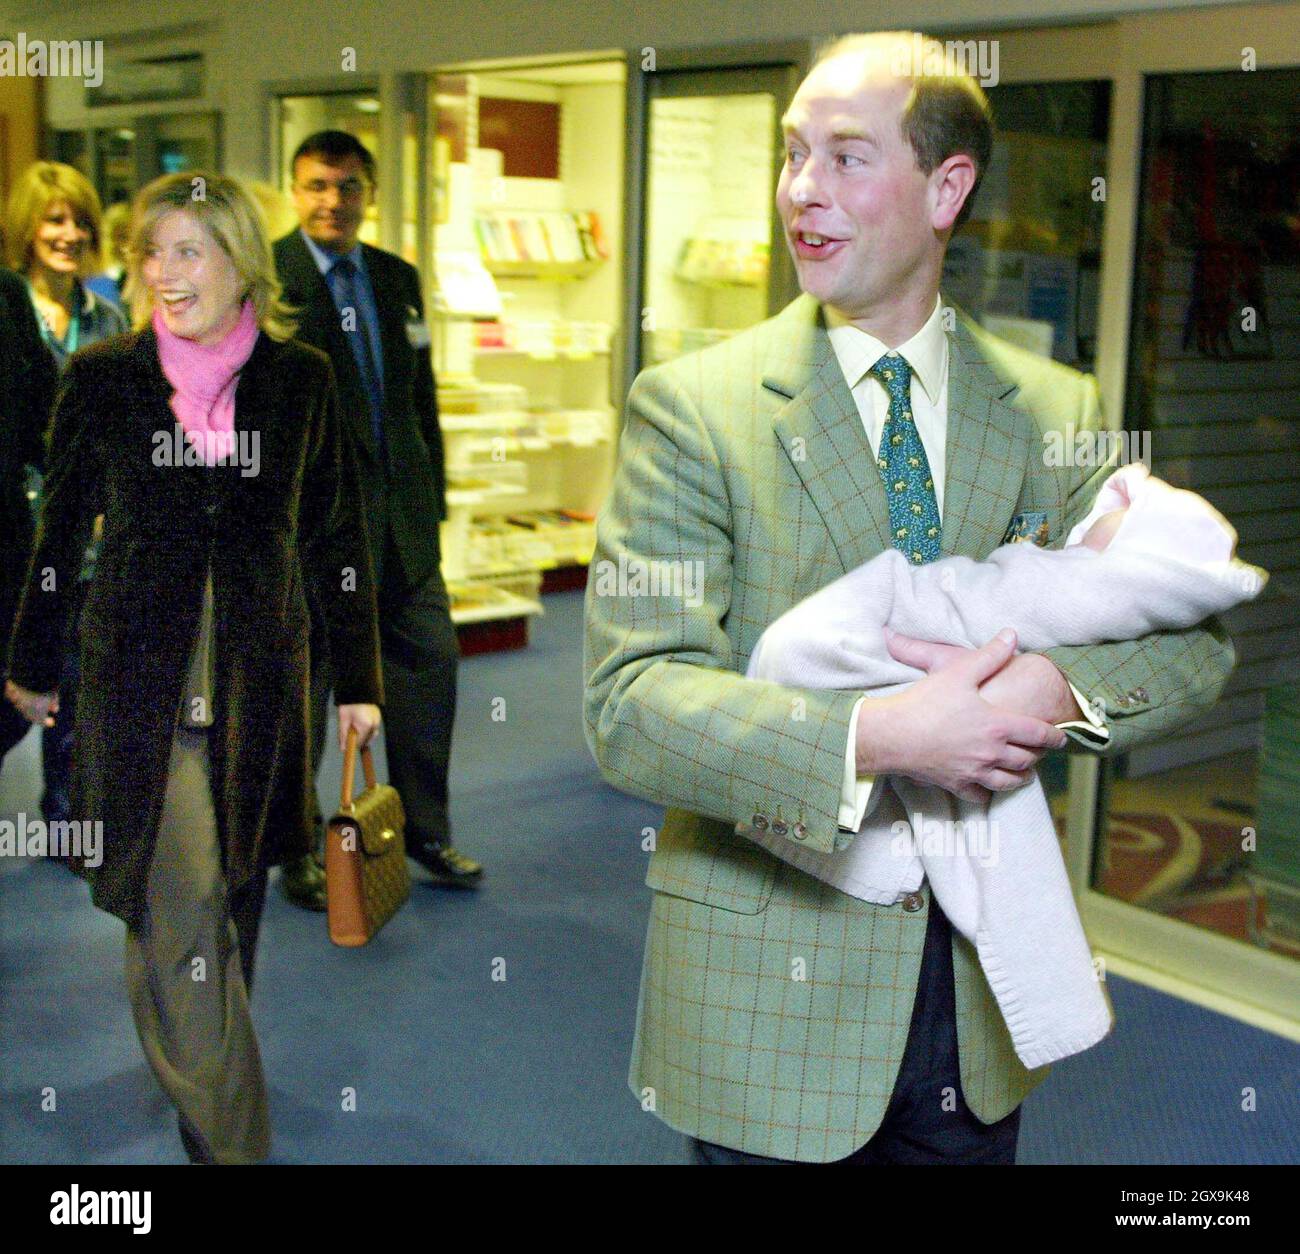 El conde y la condesa de Wessex abandonan el Frimley Park Hospital cerca de Londres con su hija recién nacida. Â©Anwar Hussein/allactiondigital.com Foto de stock